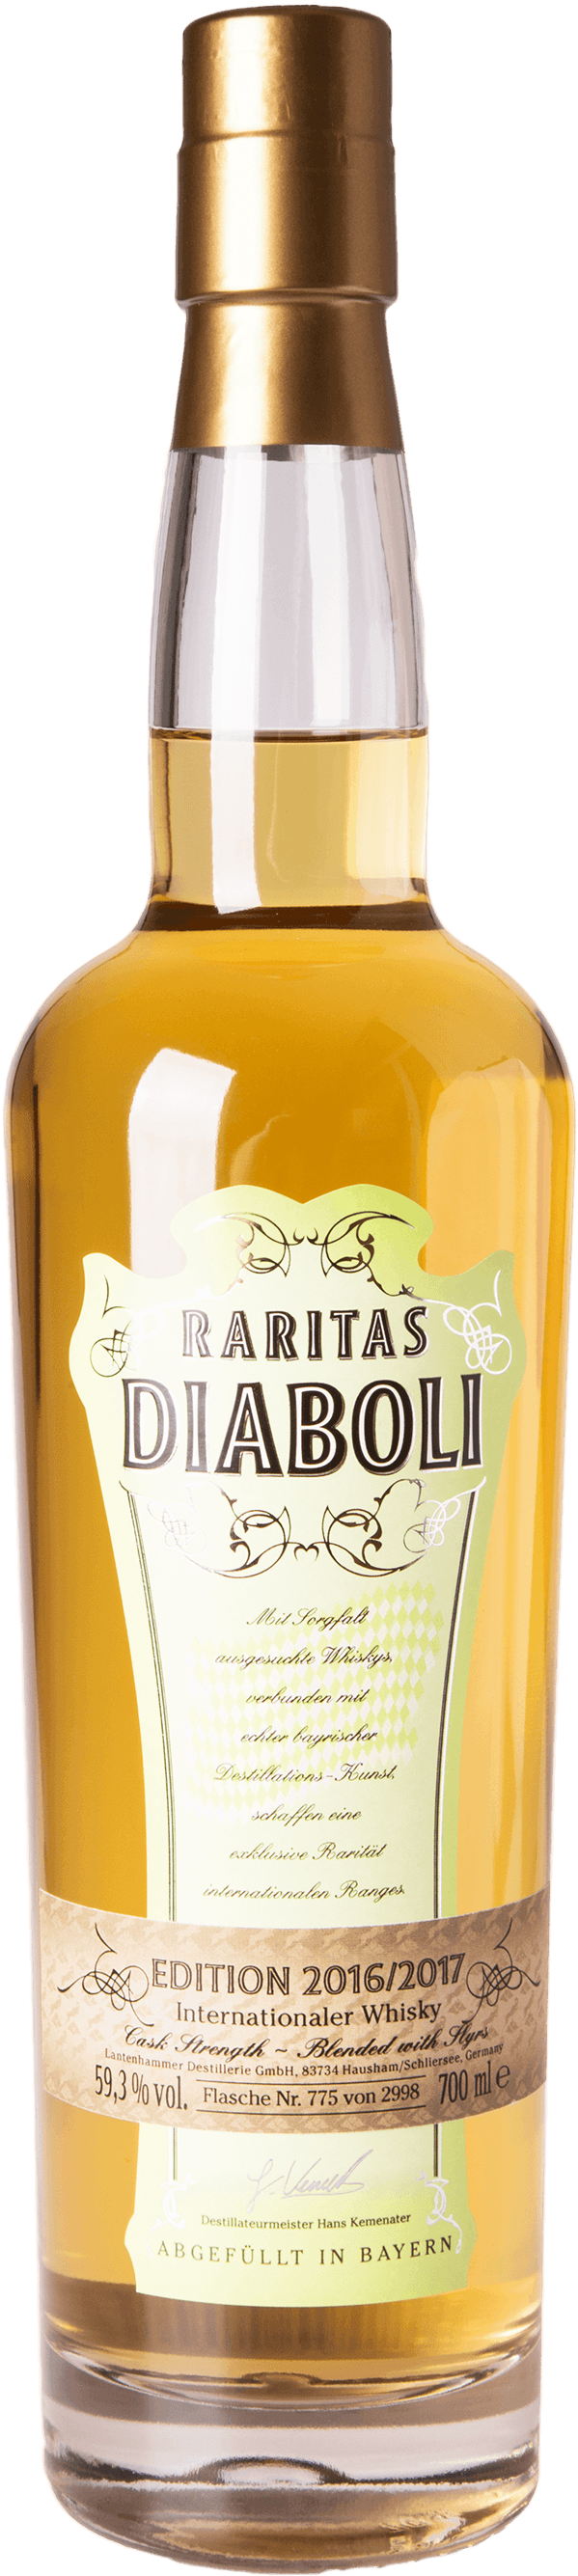 Raritas Diaboli Edition 2016 2017 Blended Whisky 59,3% 0,7L